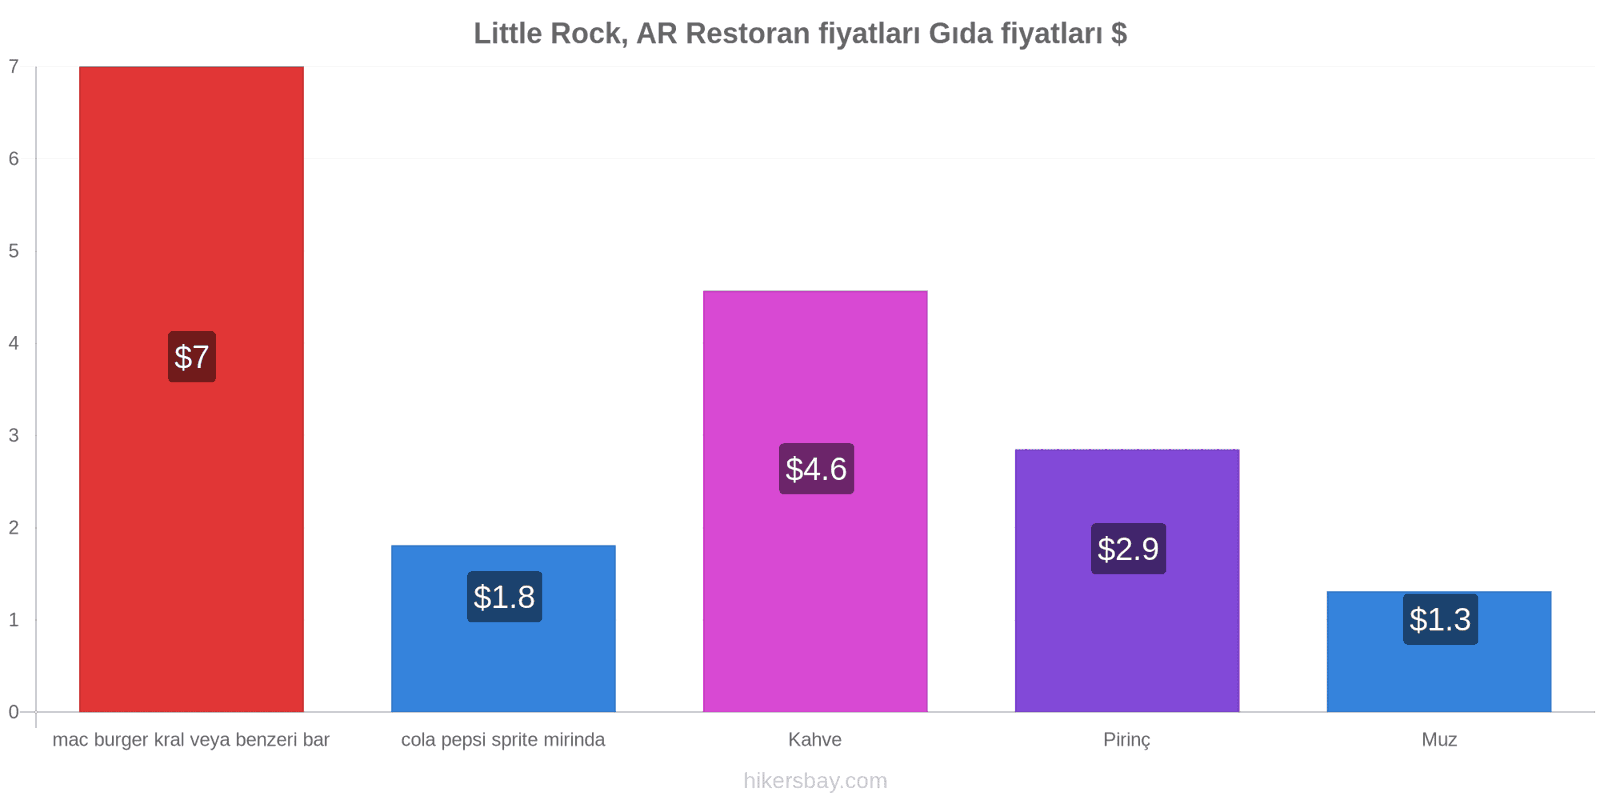 Little Rock, AR fiyat değişiklikleri hikersbay.com